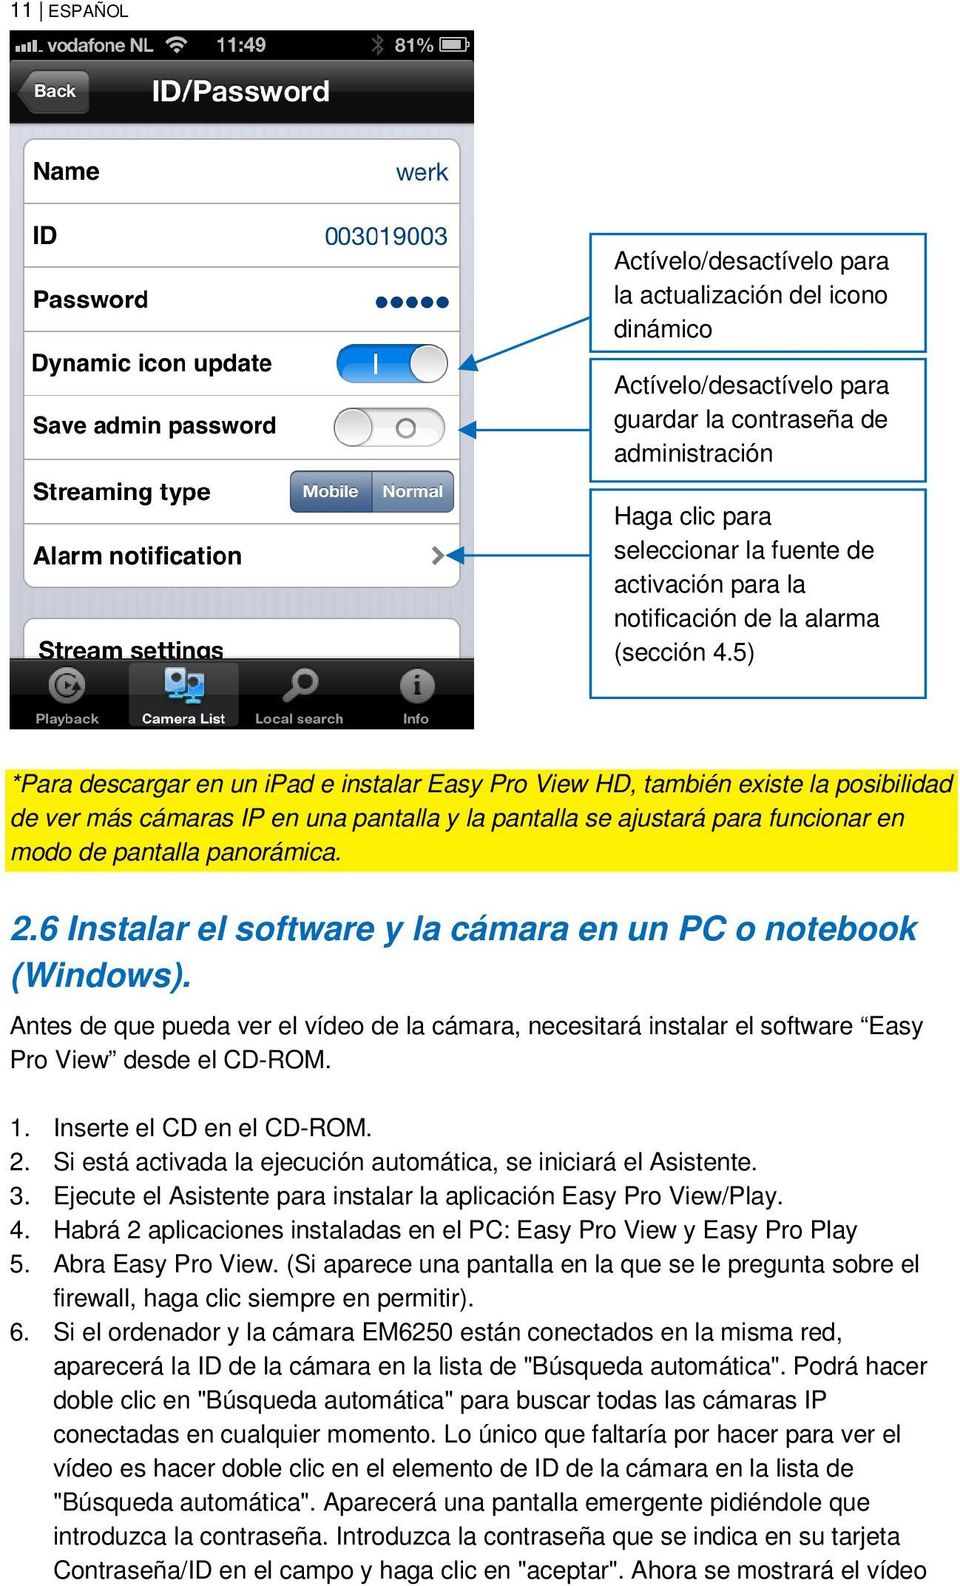 5) *Para descargar en un ipad e instalar Easy Pro View HD, también existe la posibilidad de ver más cámaras IP en una pantalla y la pantalla se ajustará para funcionar en modo de pantalla panorámica.